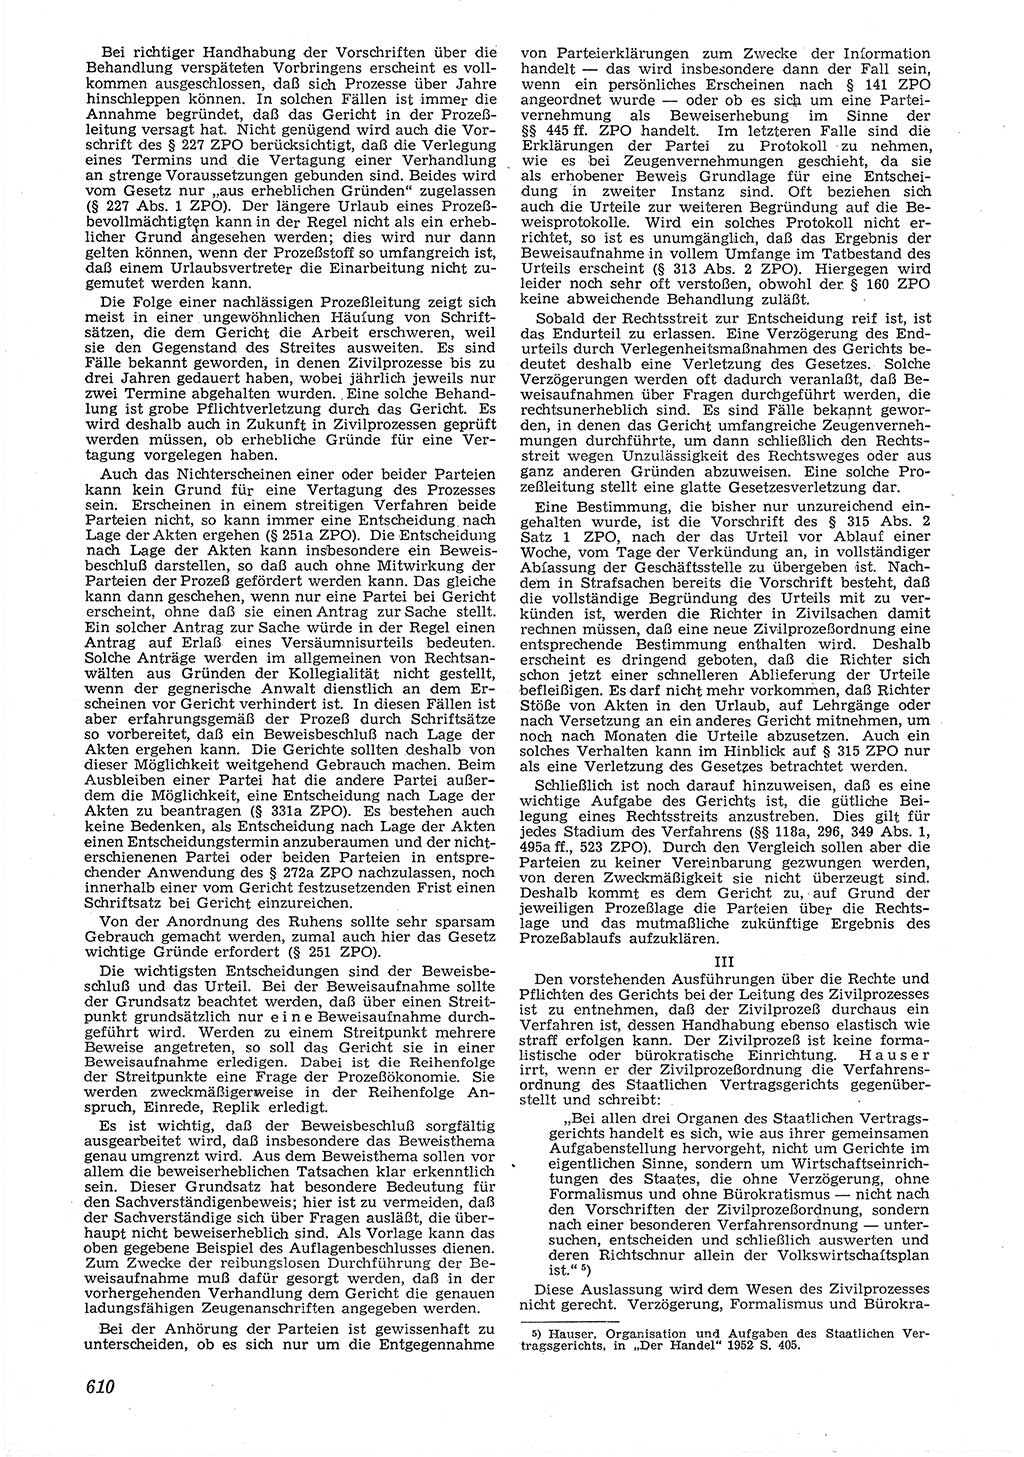 Neue Justiz (NJ), Zeitschrift für Recht und Rechtswissenschaft [Deutsche Demokratische Republik (DDR)], 6. Jahrgang 1952, Seite 610 (NJ DDR 1952, S. 610)